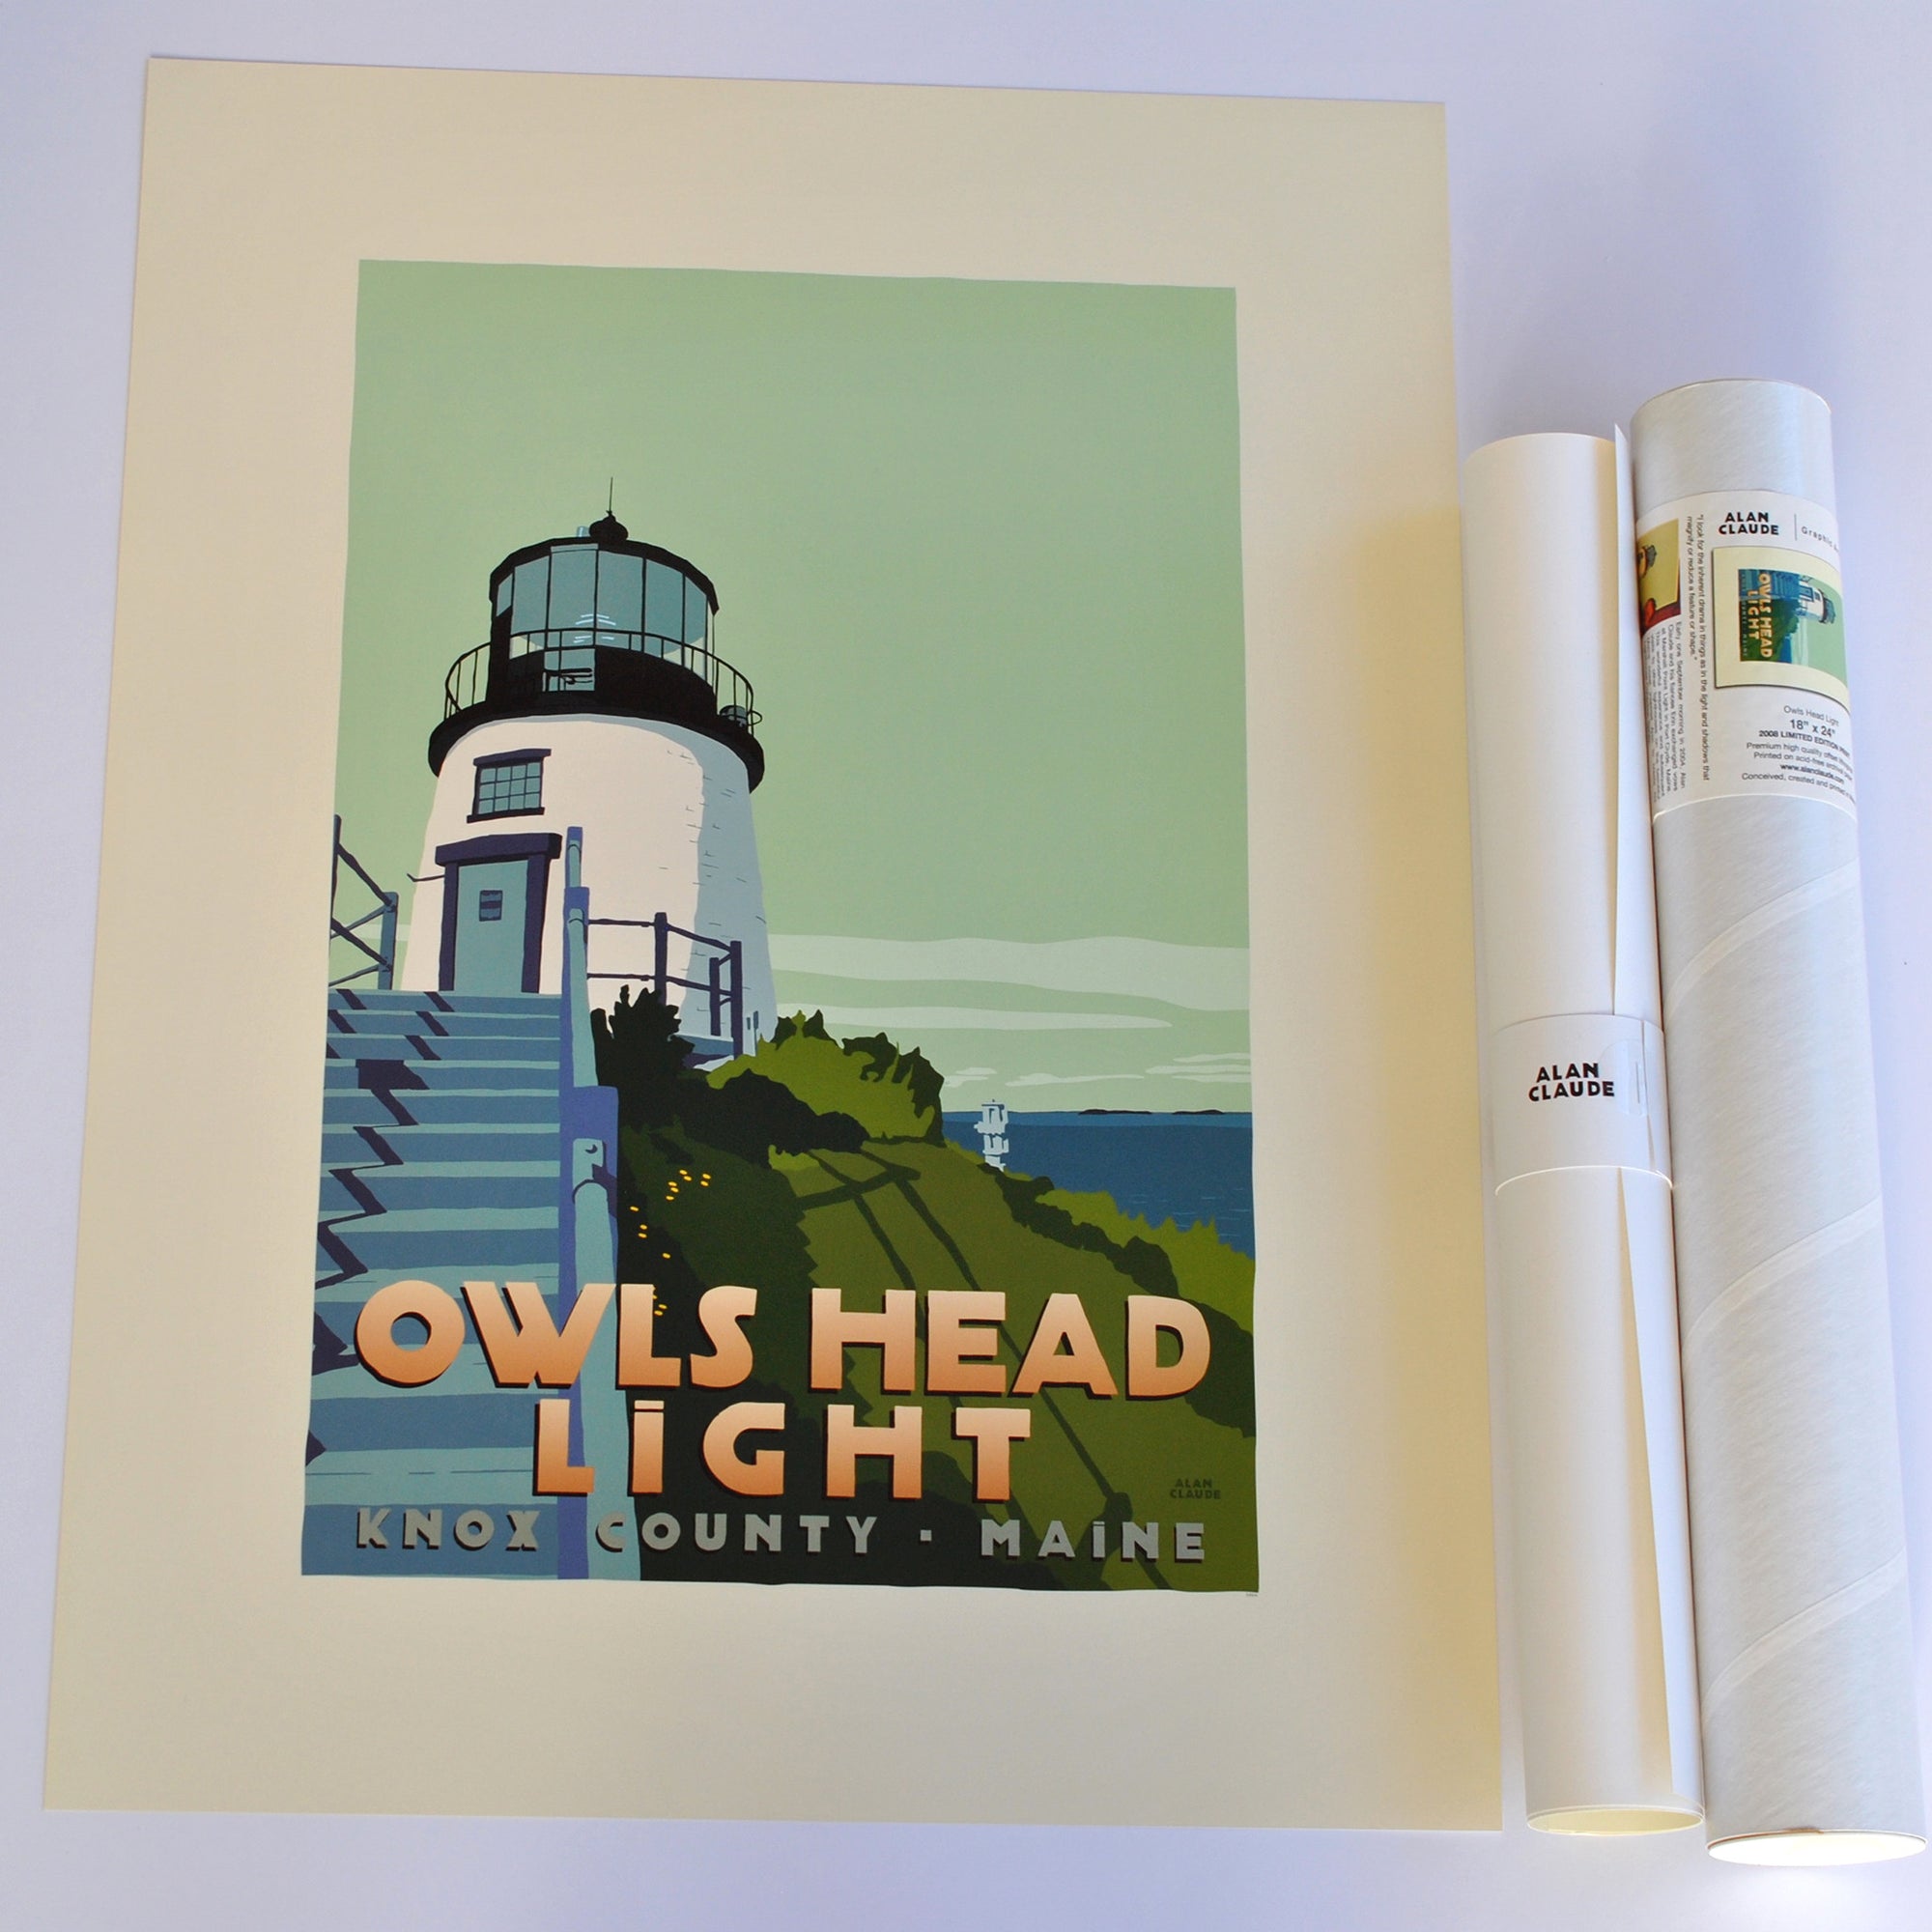 Owls Head Light Light Art Print 18" x 24" Travel Poster By Alan Claude - Maine